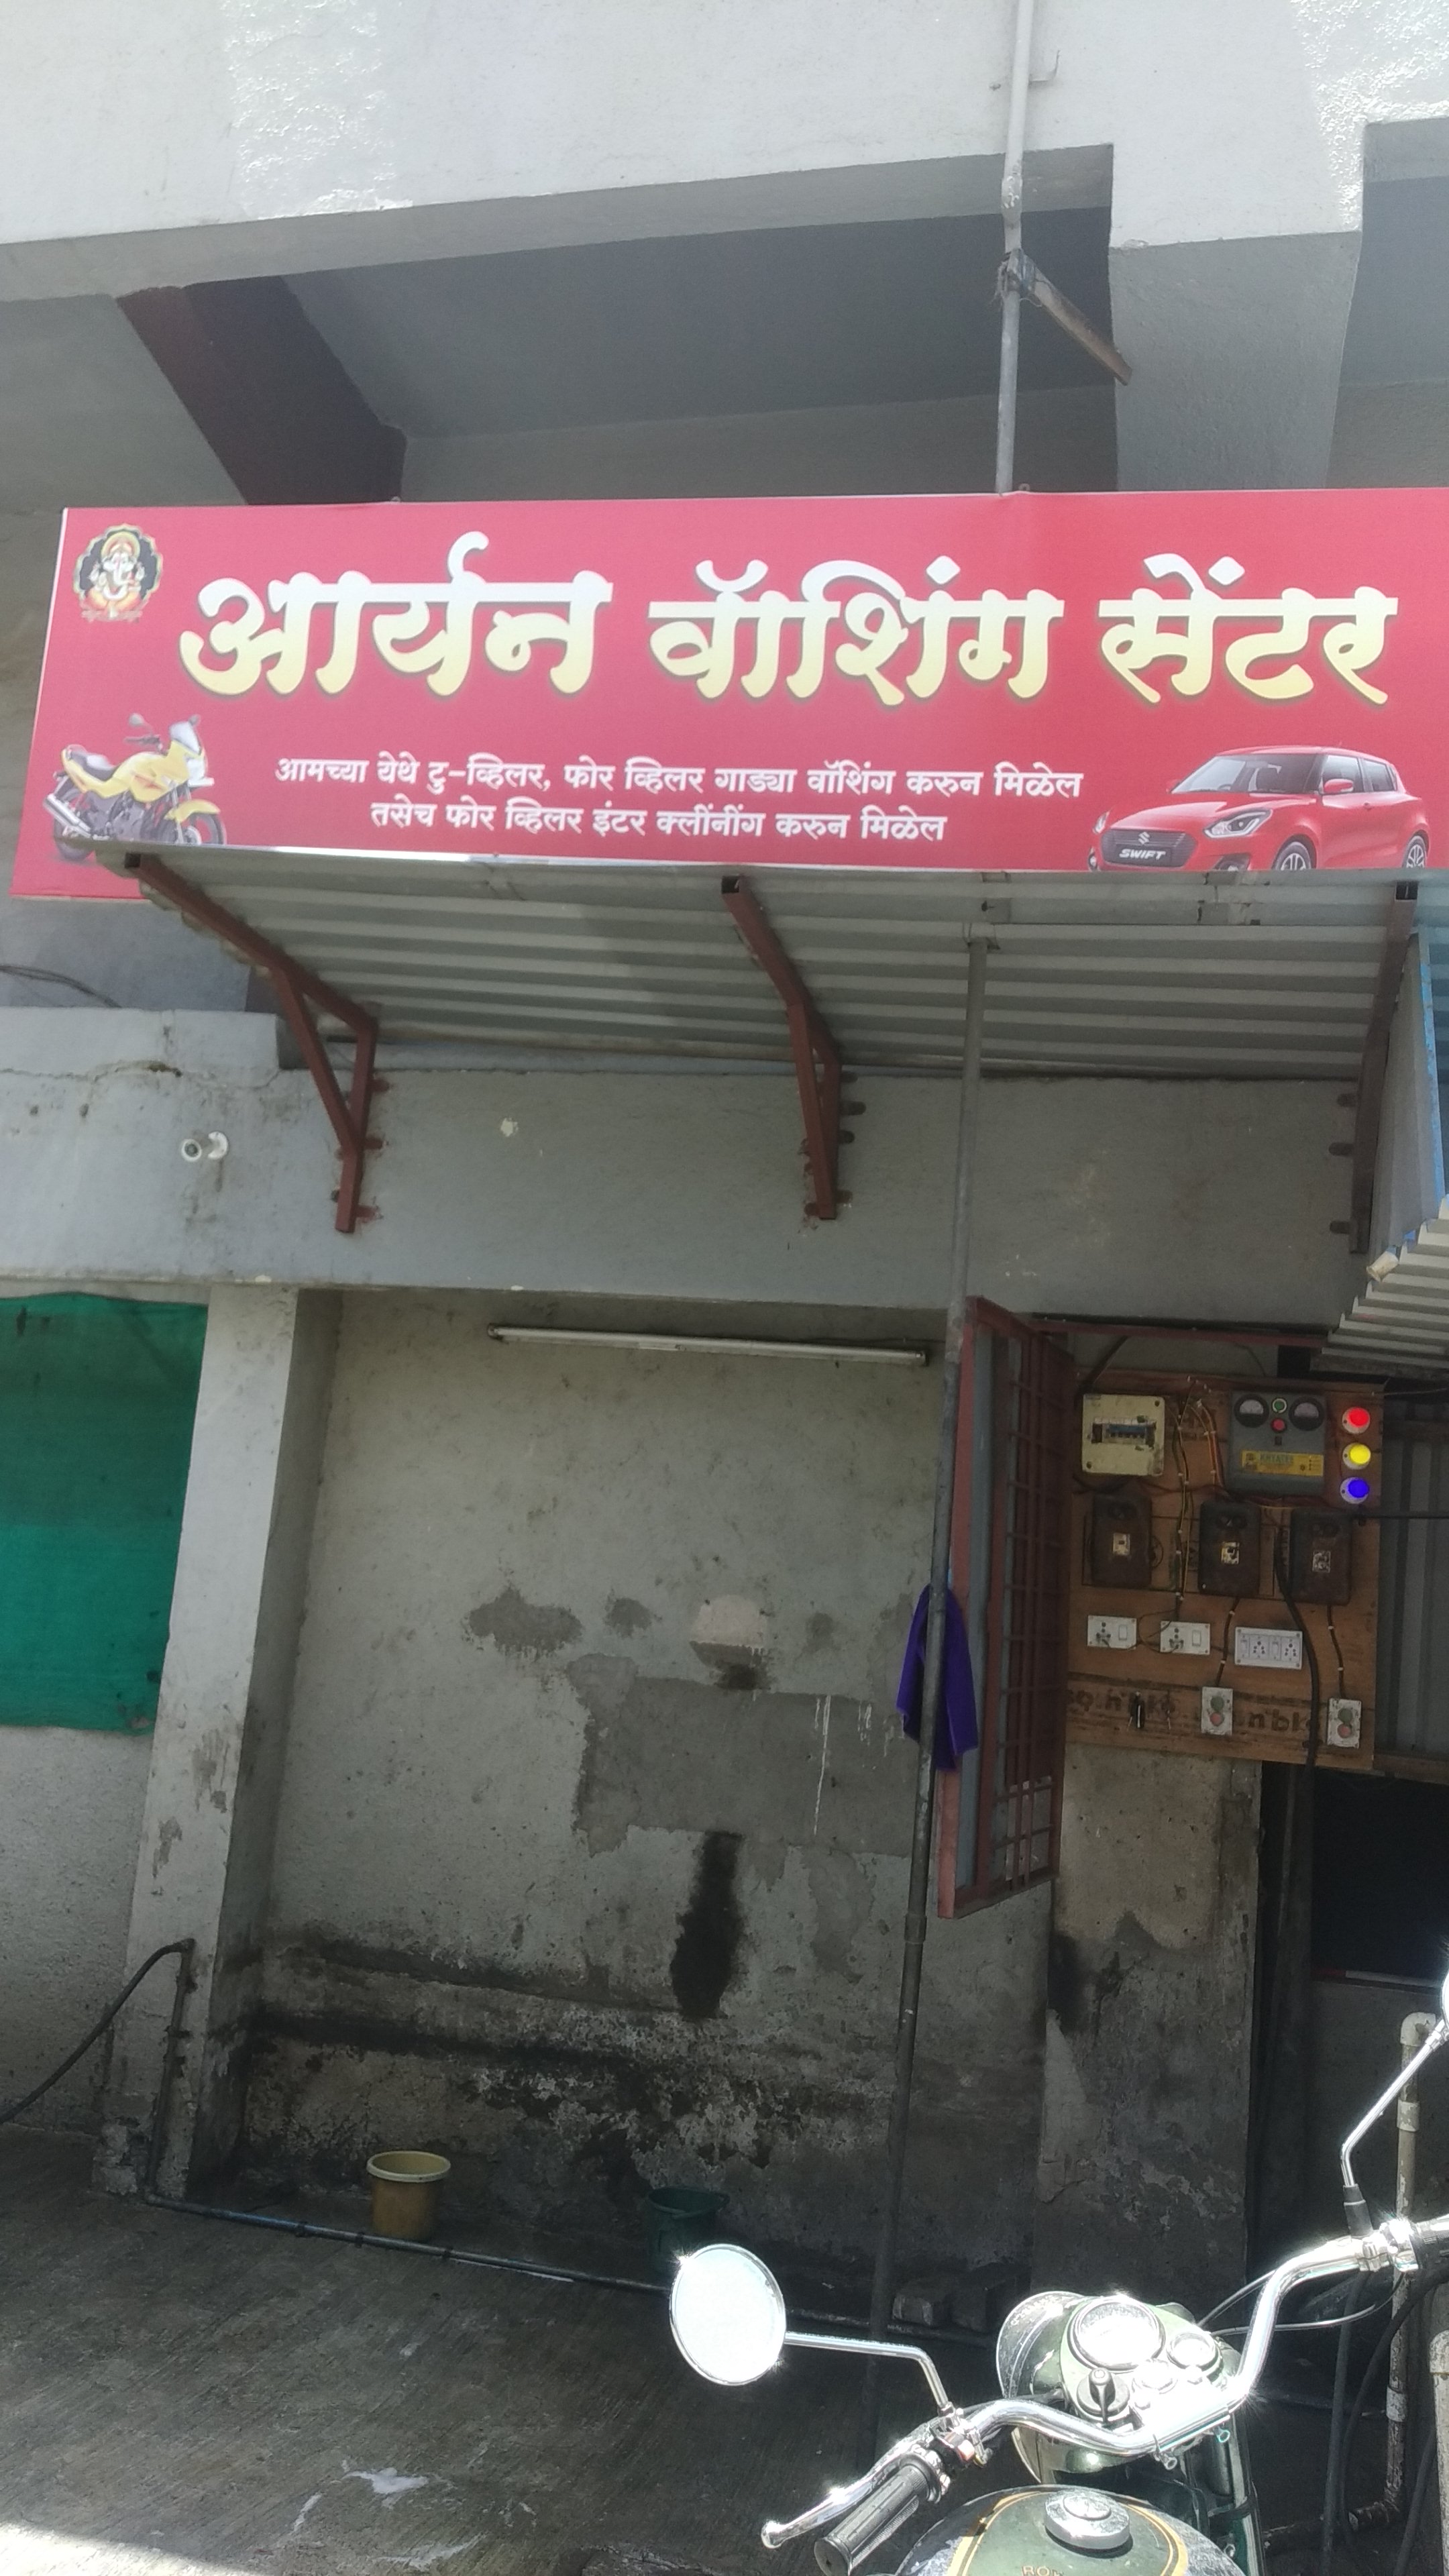 Aryan Washing Center in Old Sangvi Pune at Affordable Price.